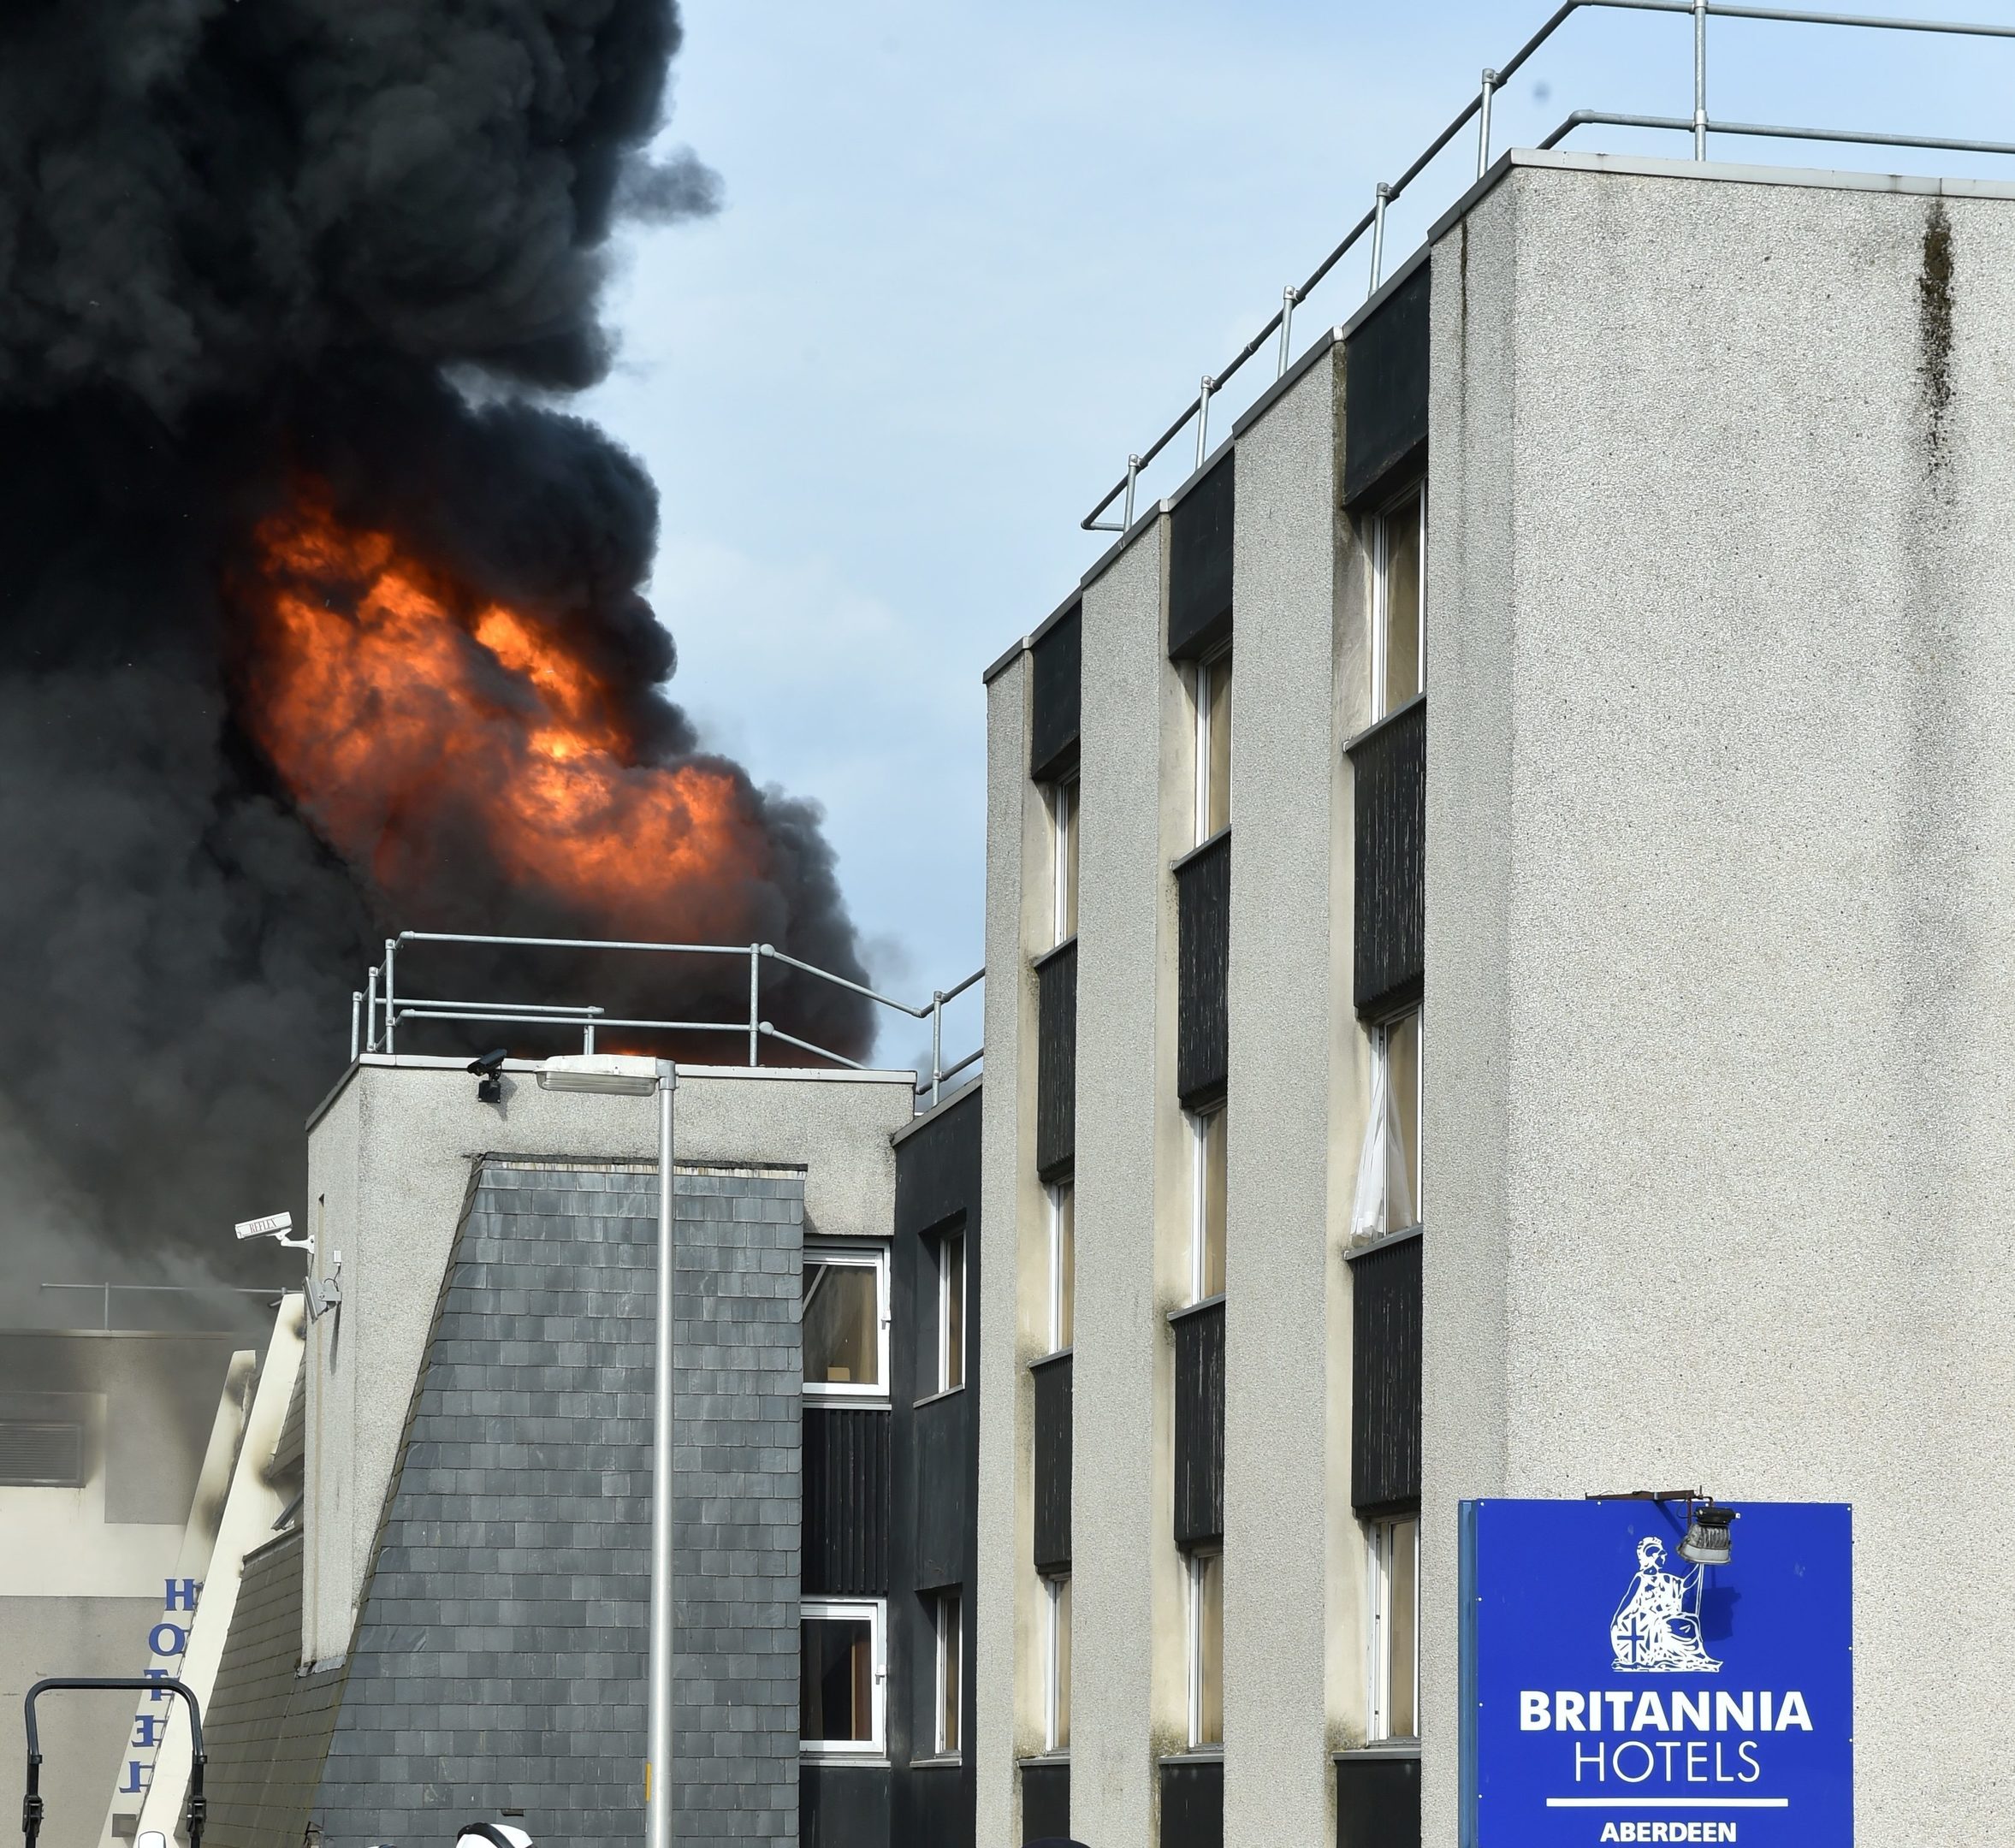 Britiania hotel Fire. Picture by Colin Rennie 